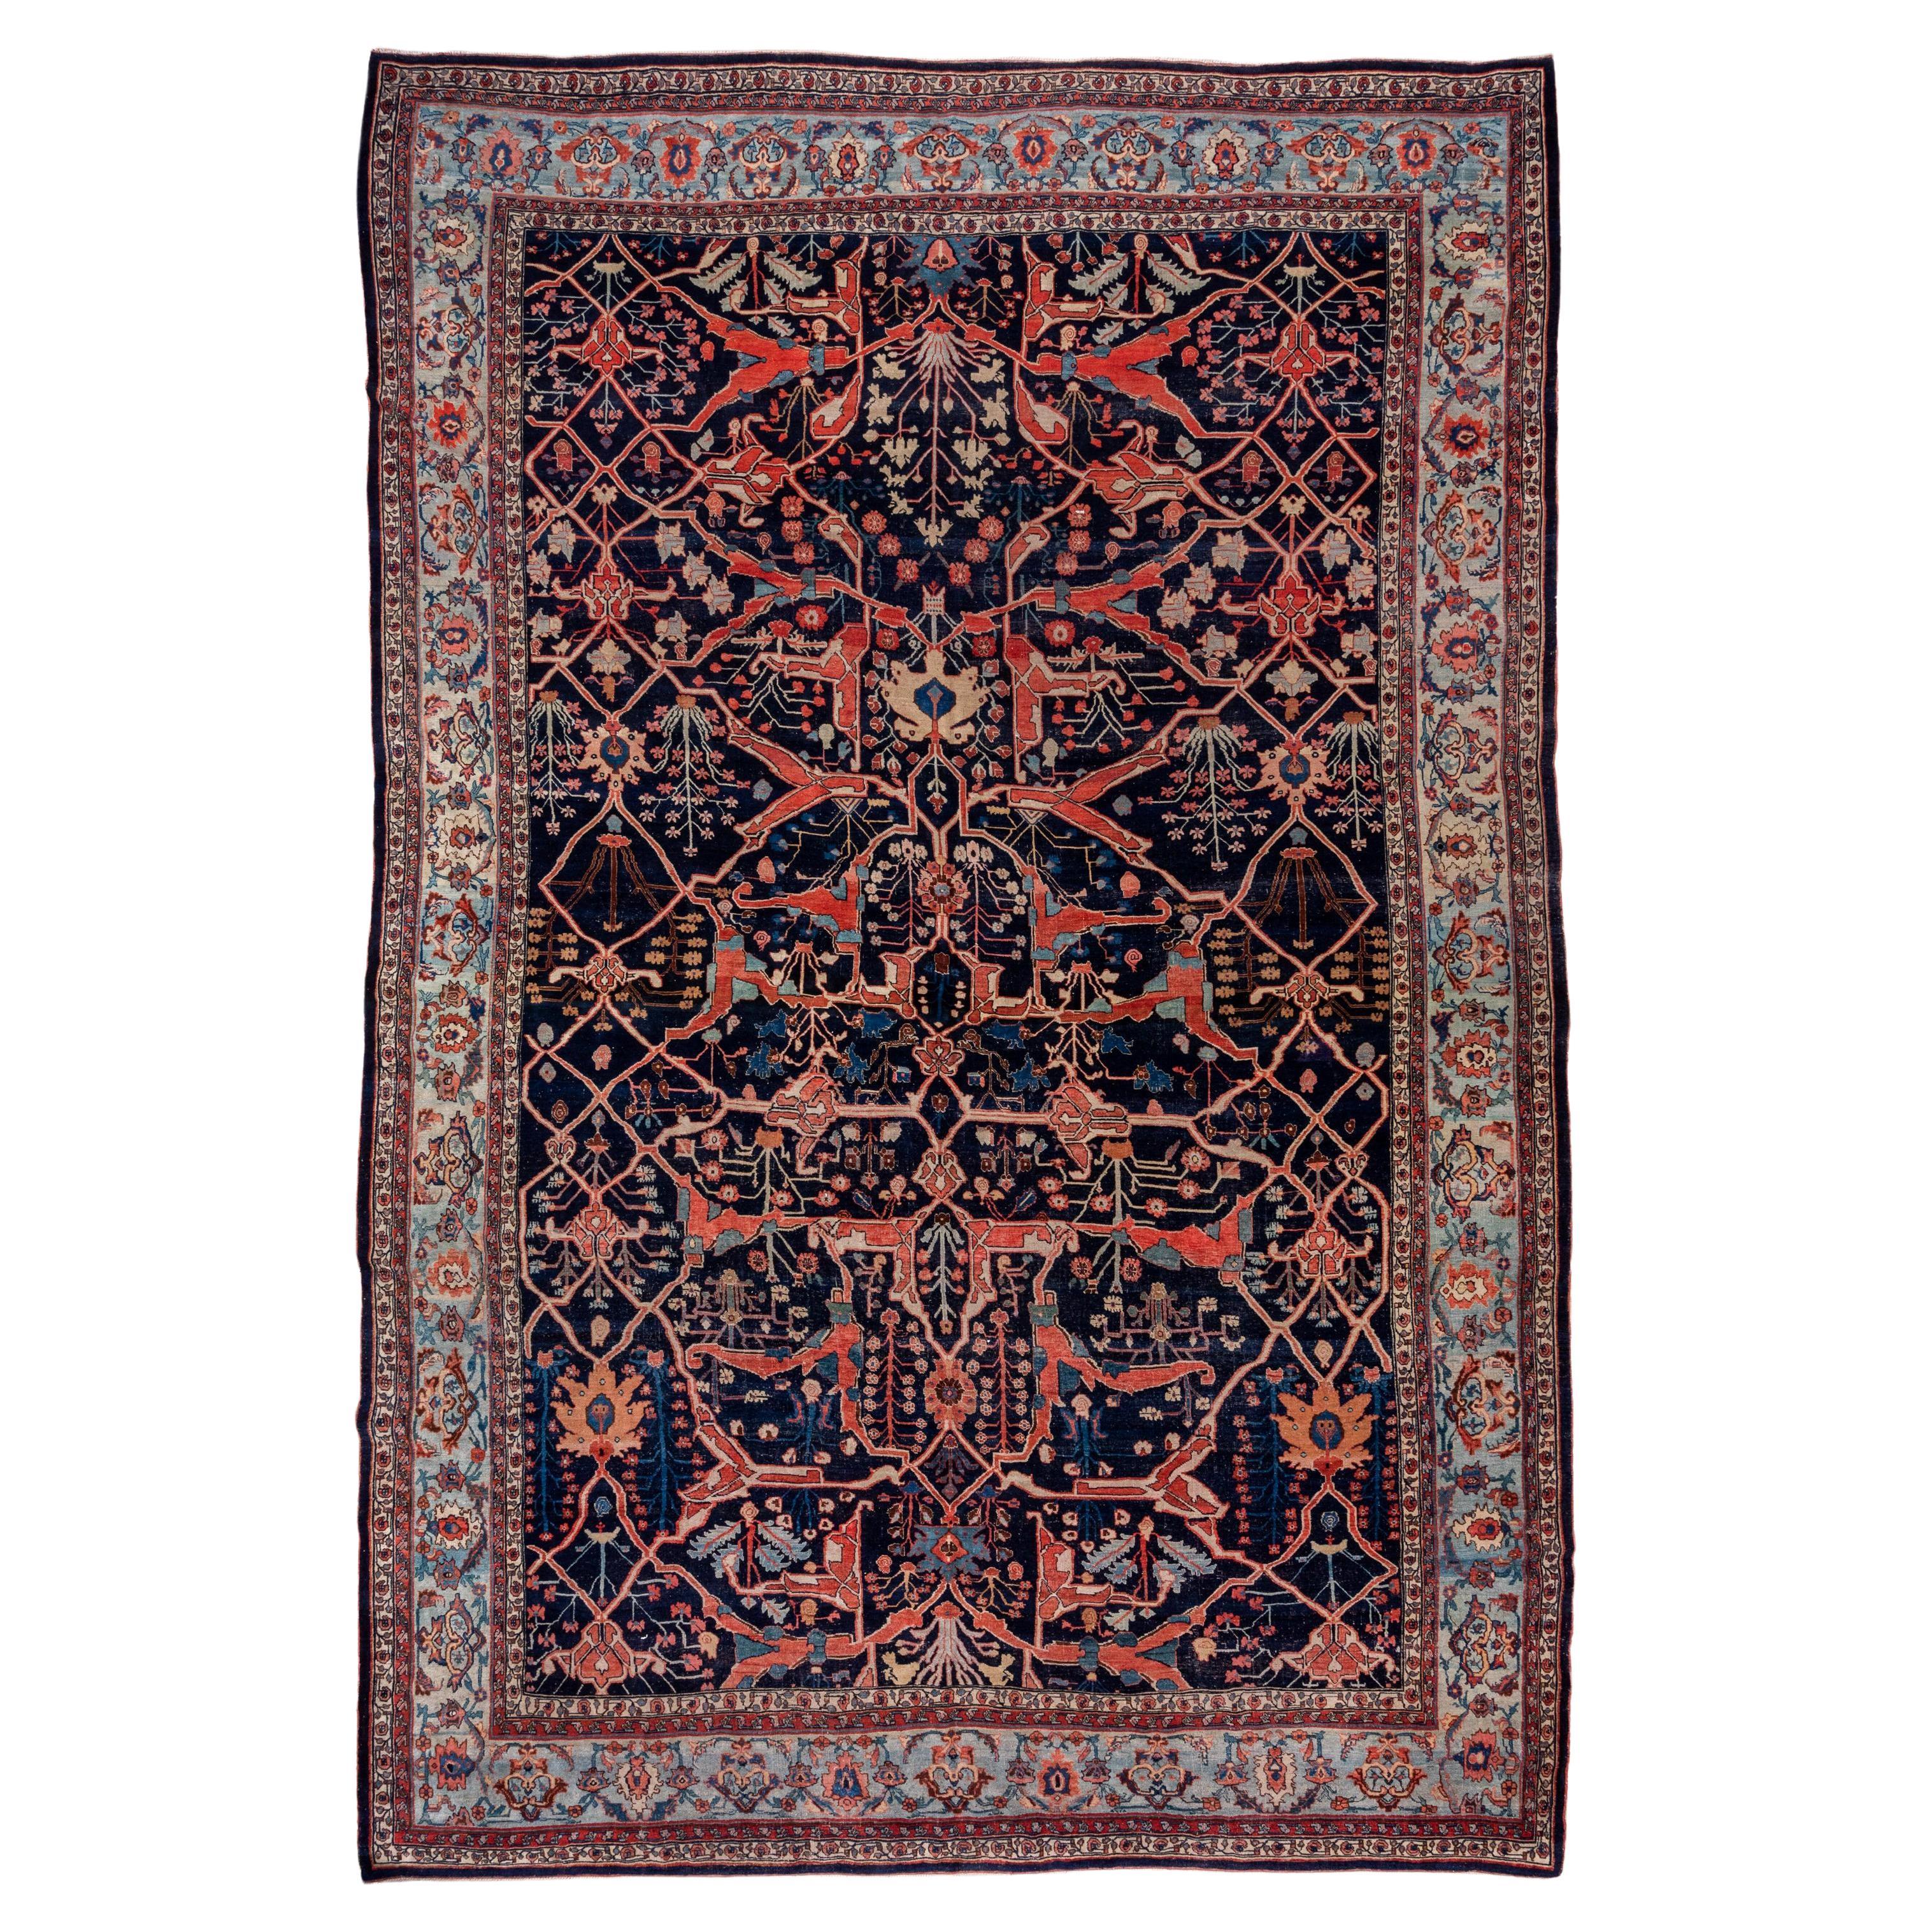 Antique Persian Bidjar Carpet, circa 1890s